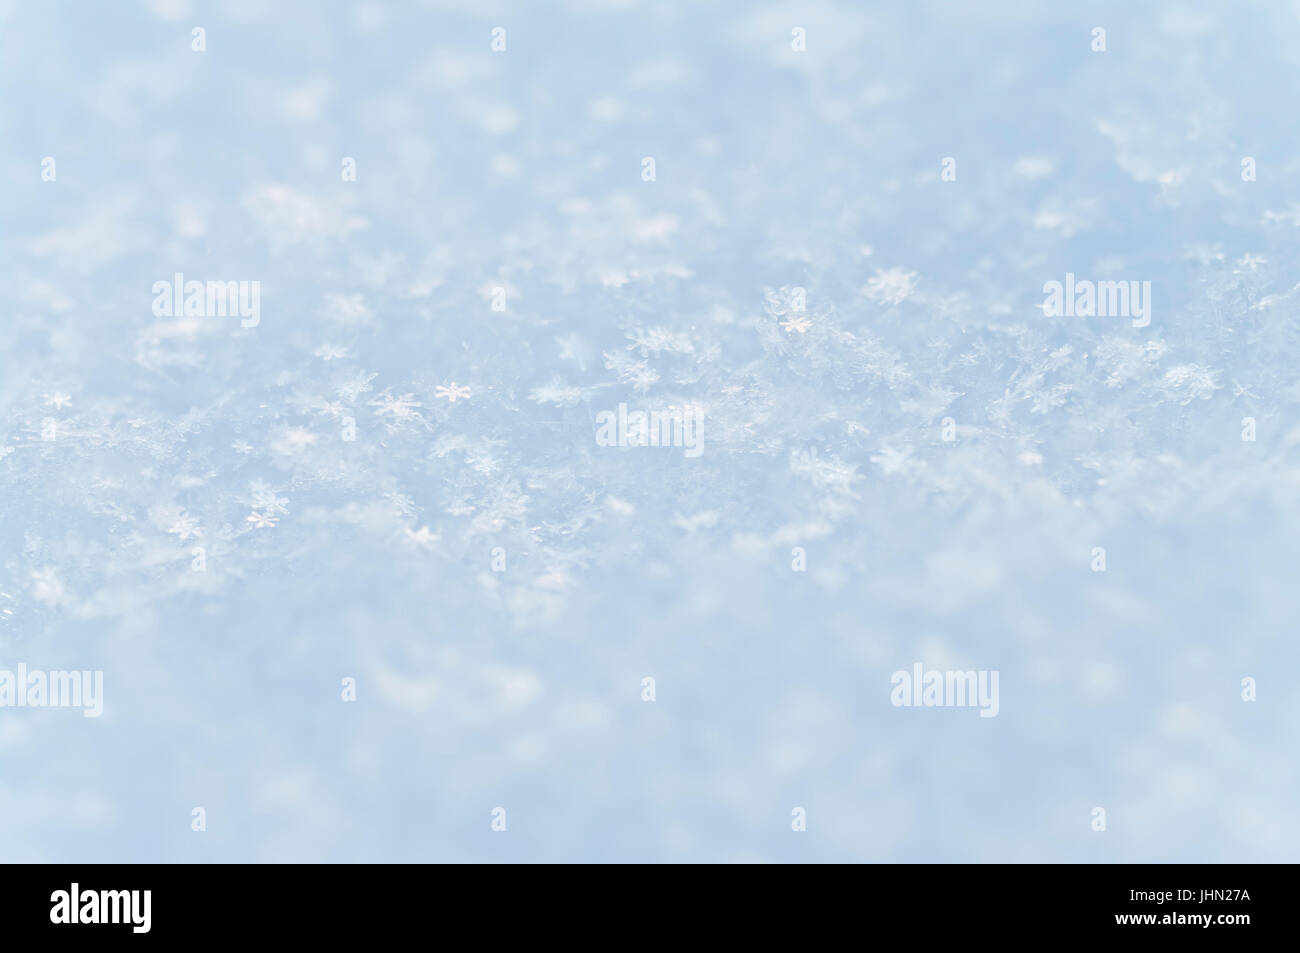 Luz de fondo azul imagen macro de la capa superior de nieve con copos de nieve independiente visible Foto de stock